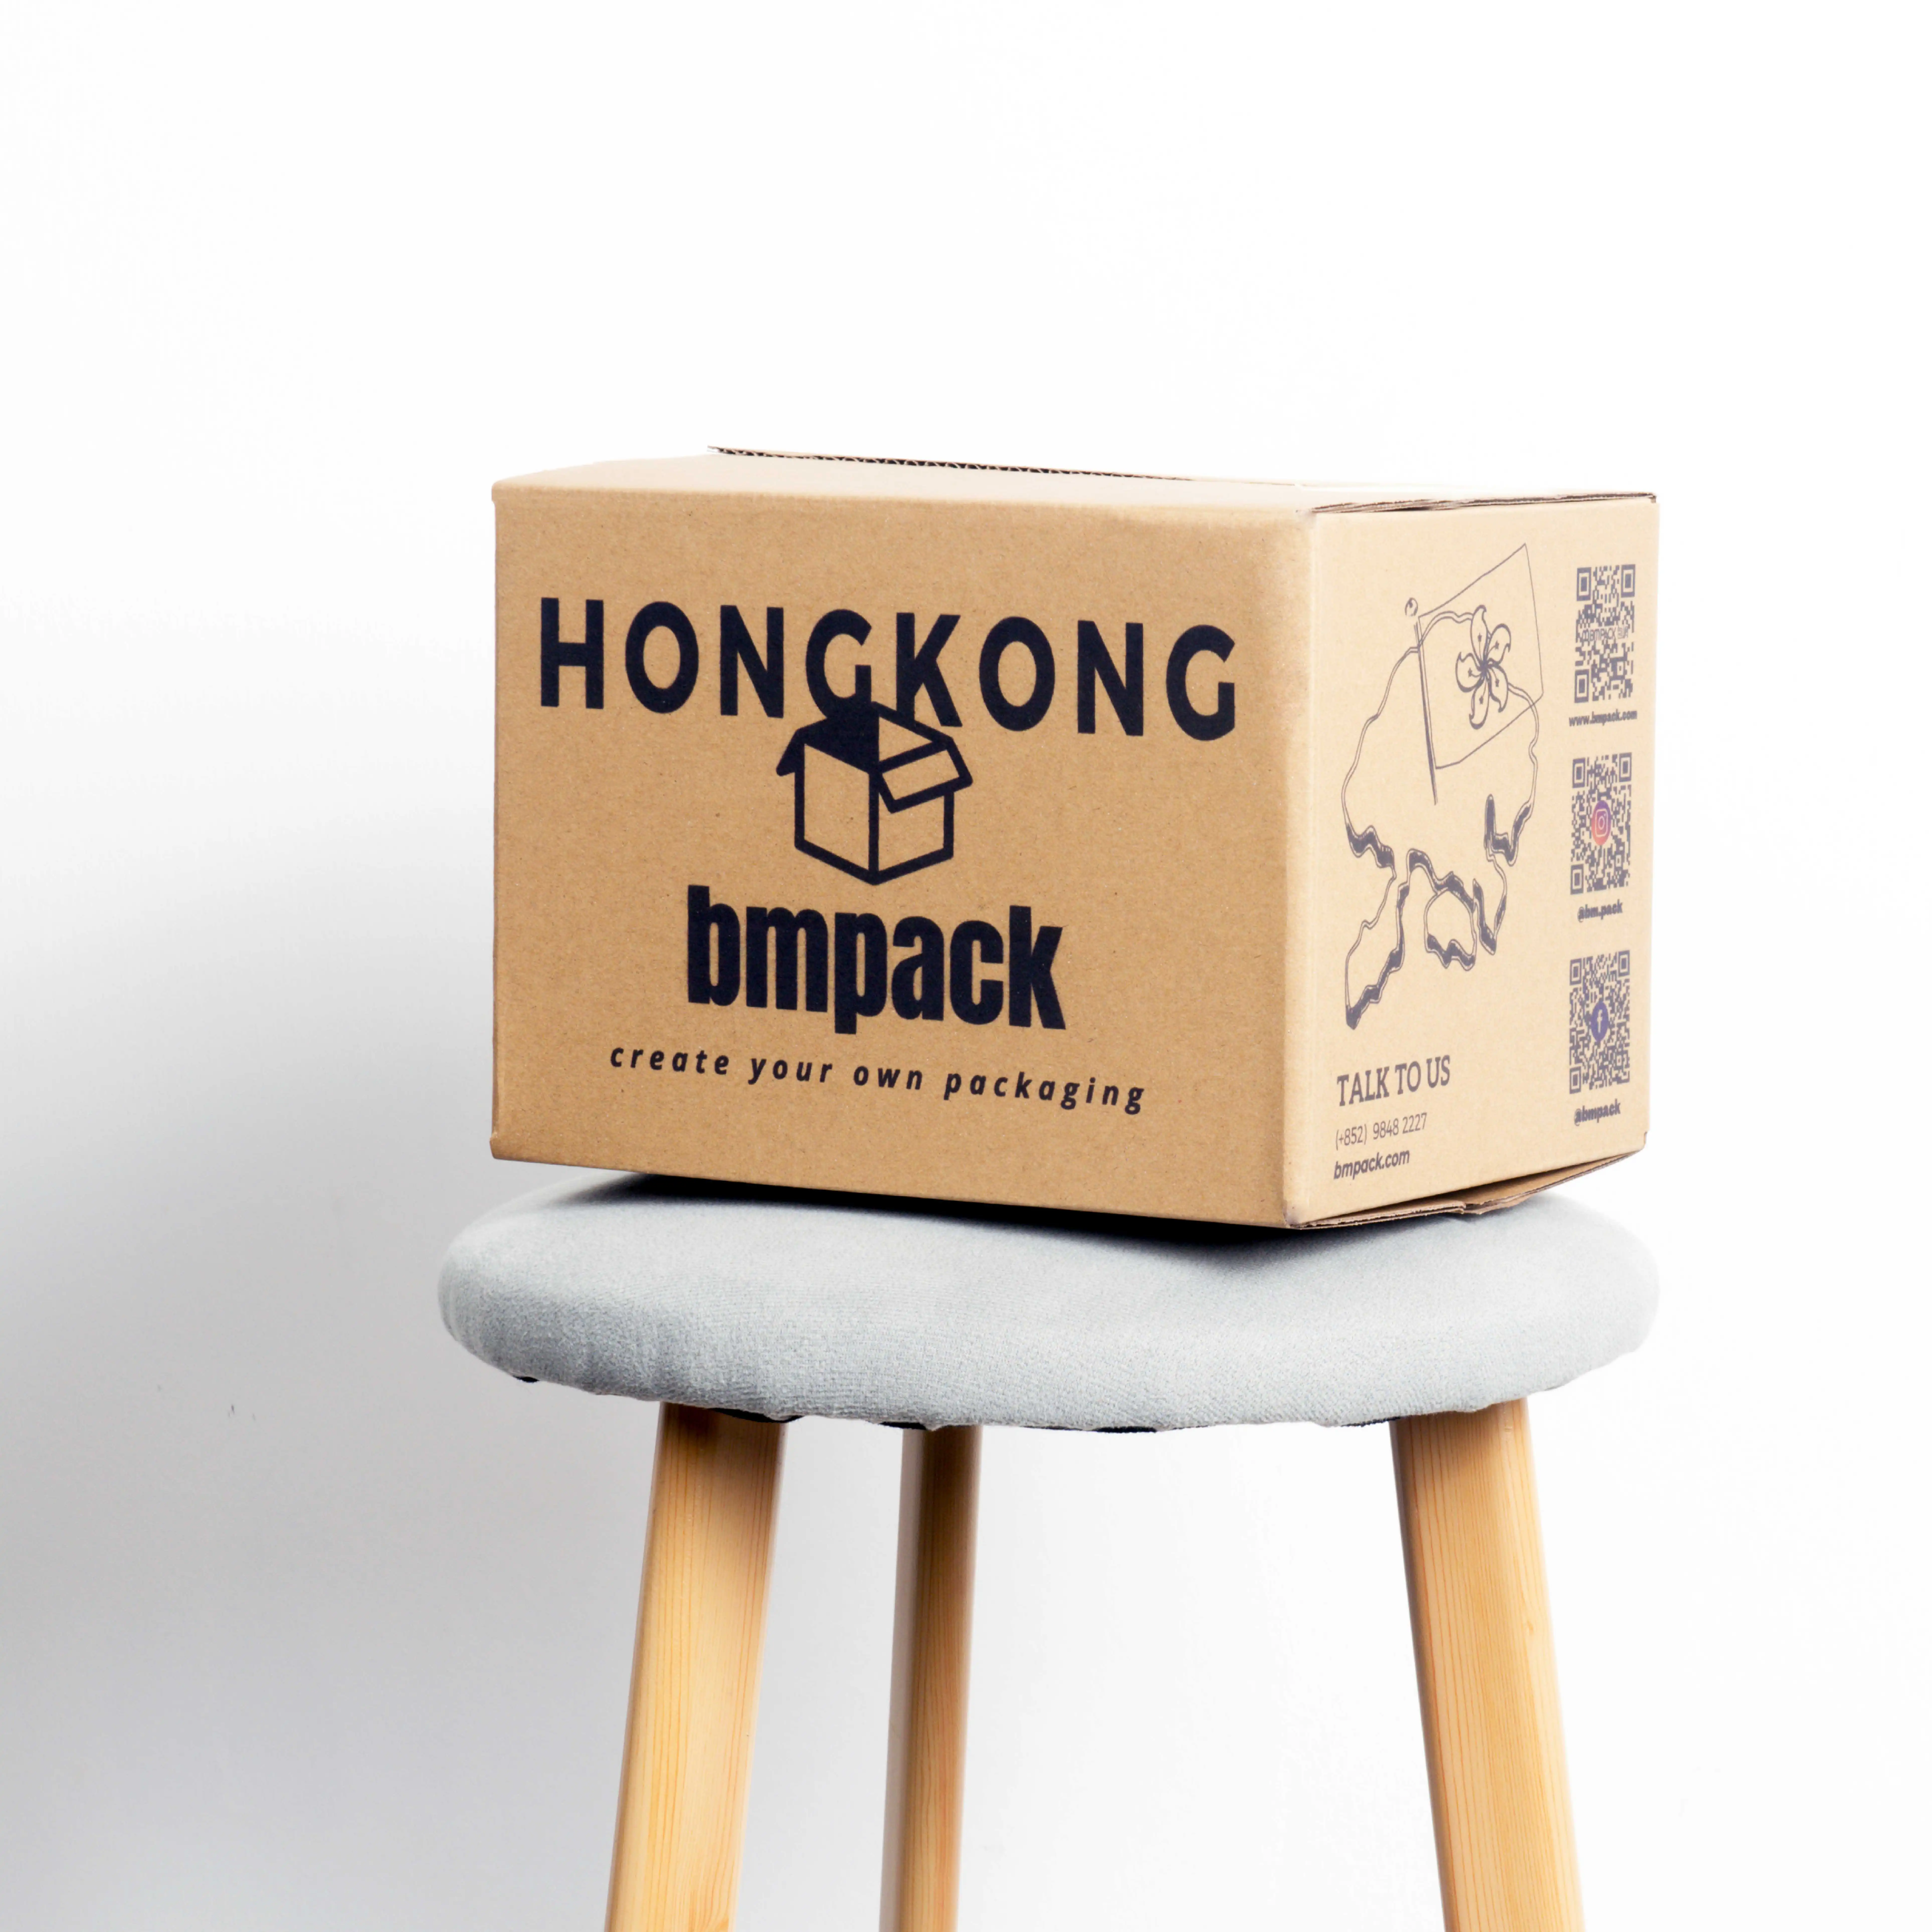 在一張圓凳上合上的紙箱, 印有“HONG KONG bmpack”